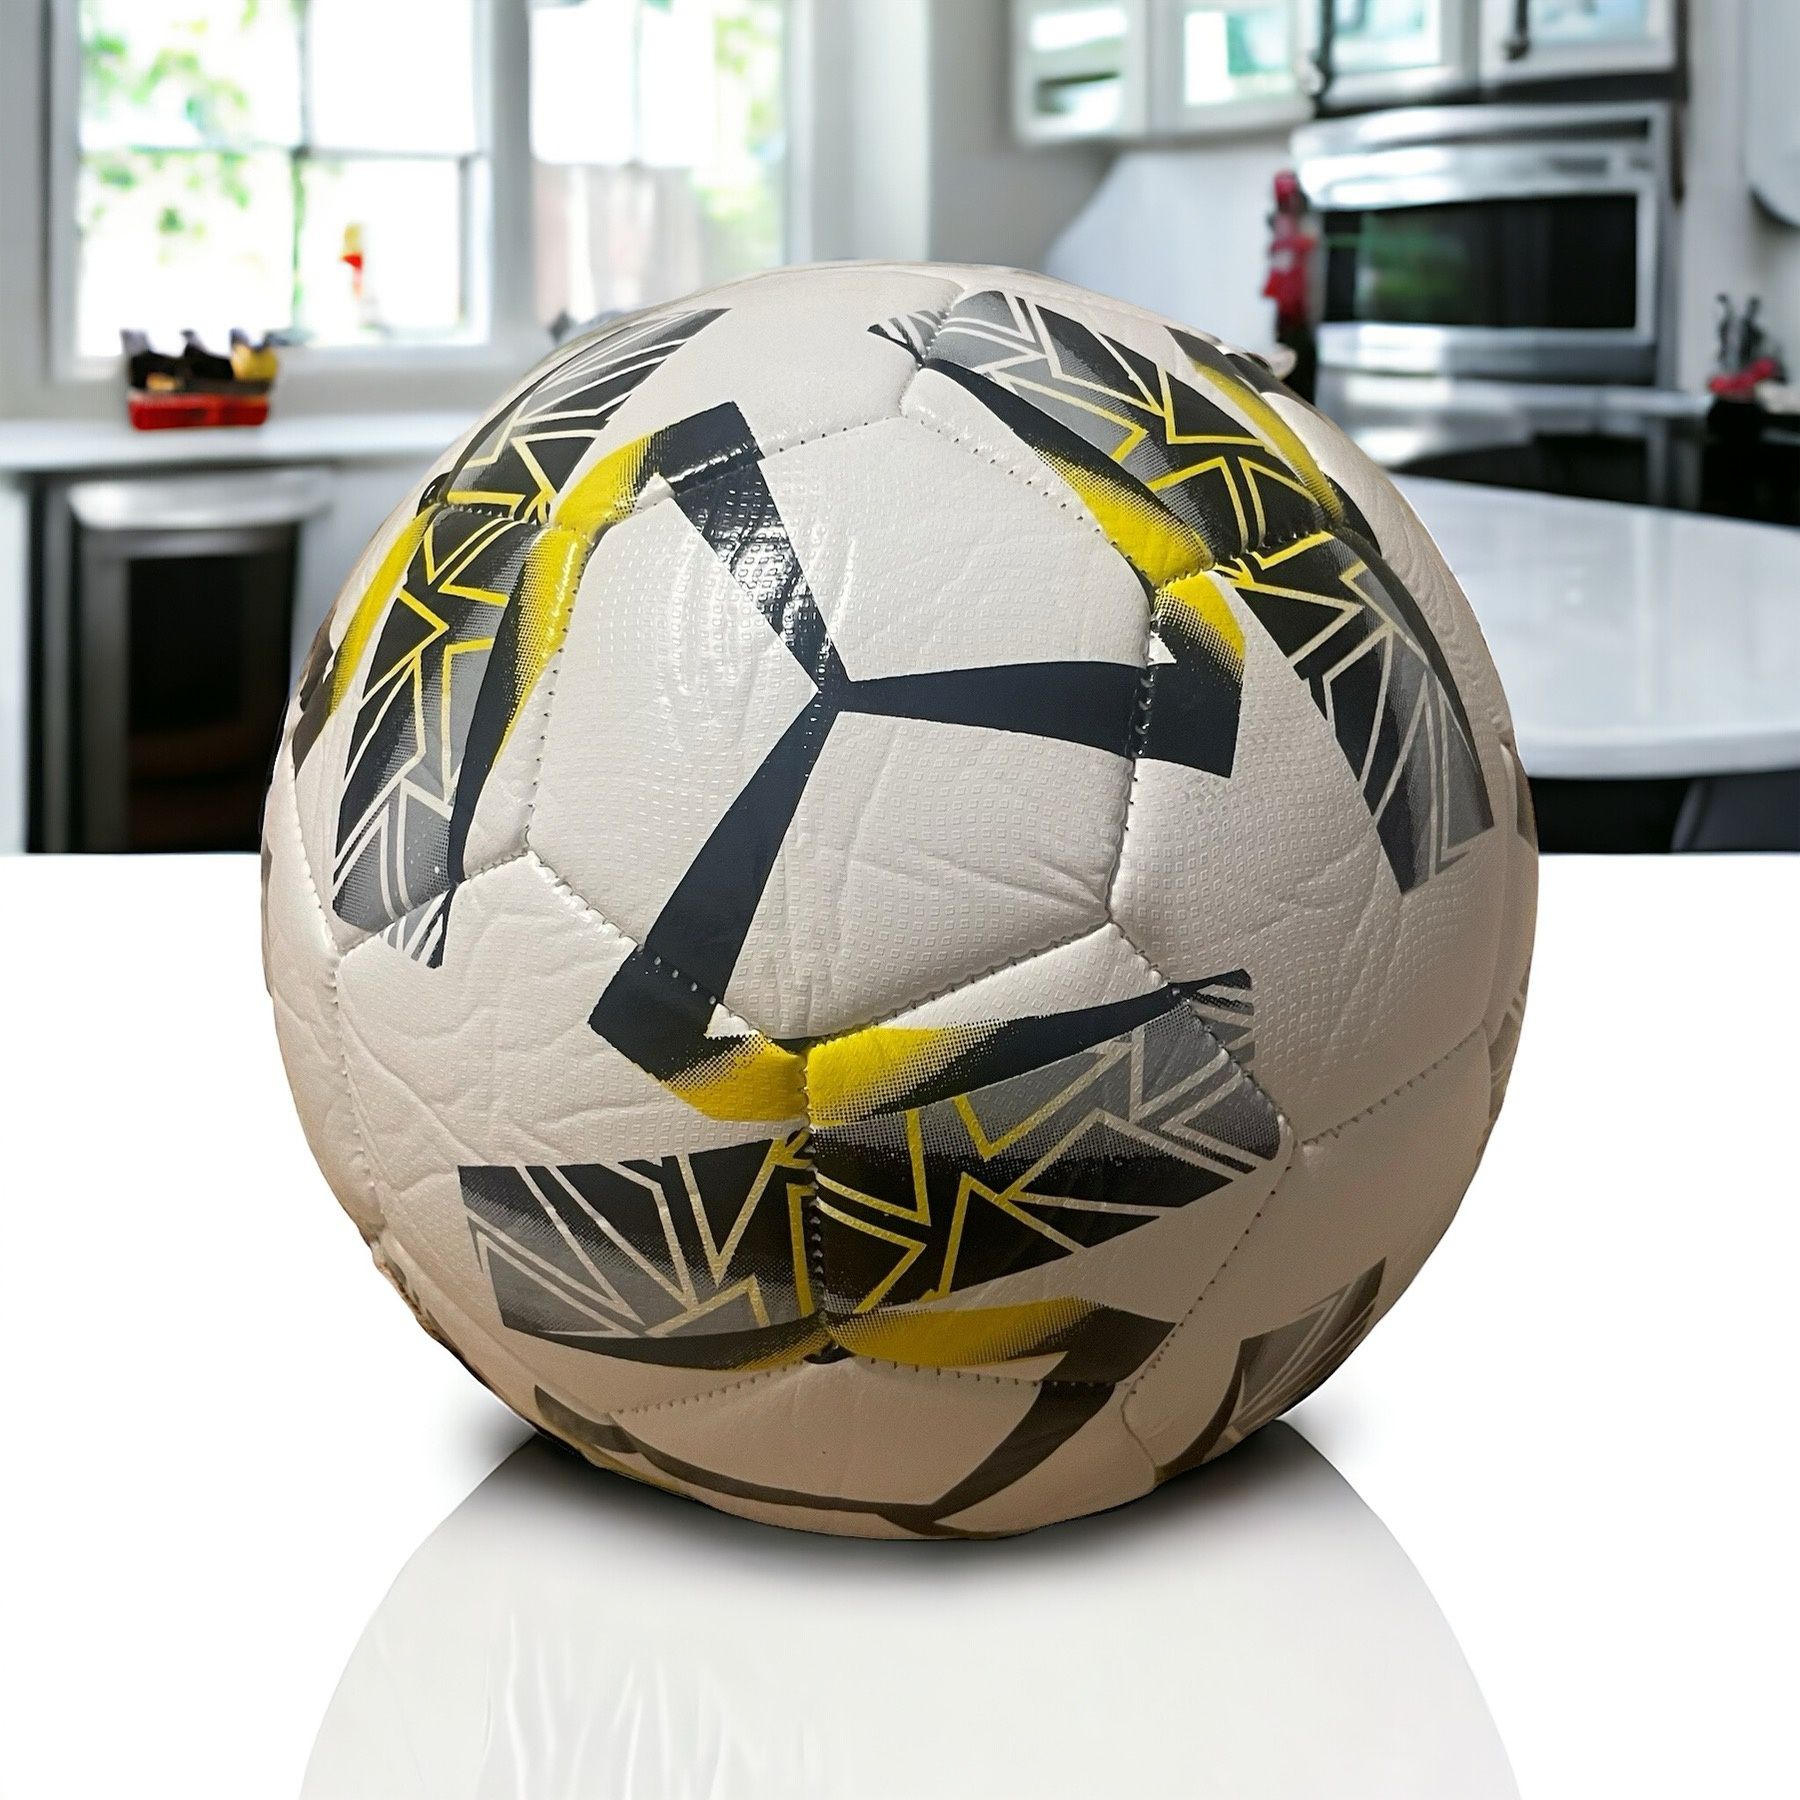 М'яч футбольний розмір 5| розпродаж| обмежена кількість